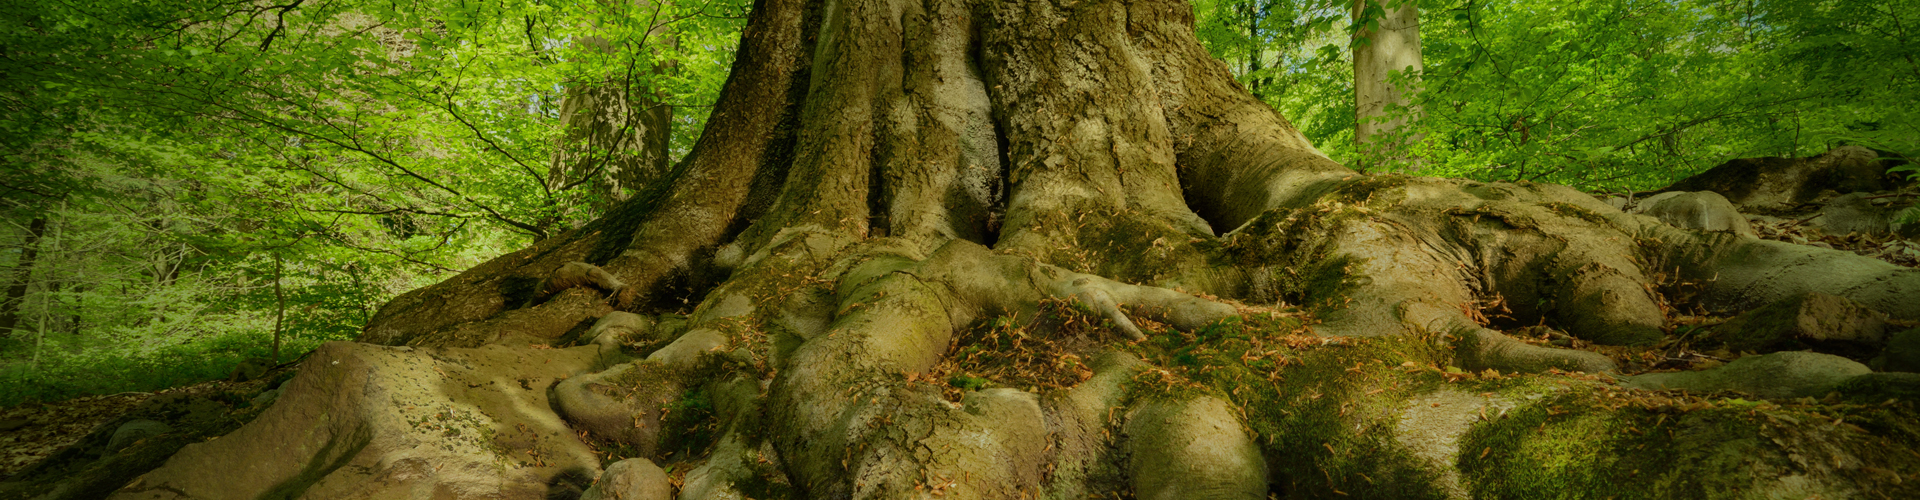 Sobre la entidad -árbol gigante con raíces fuertes